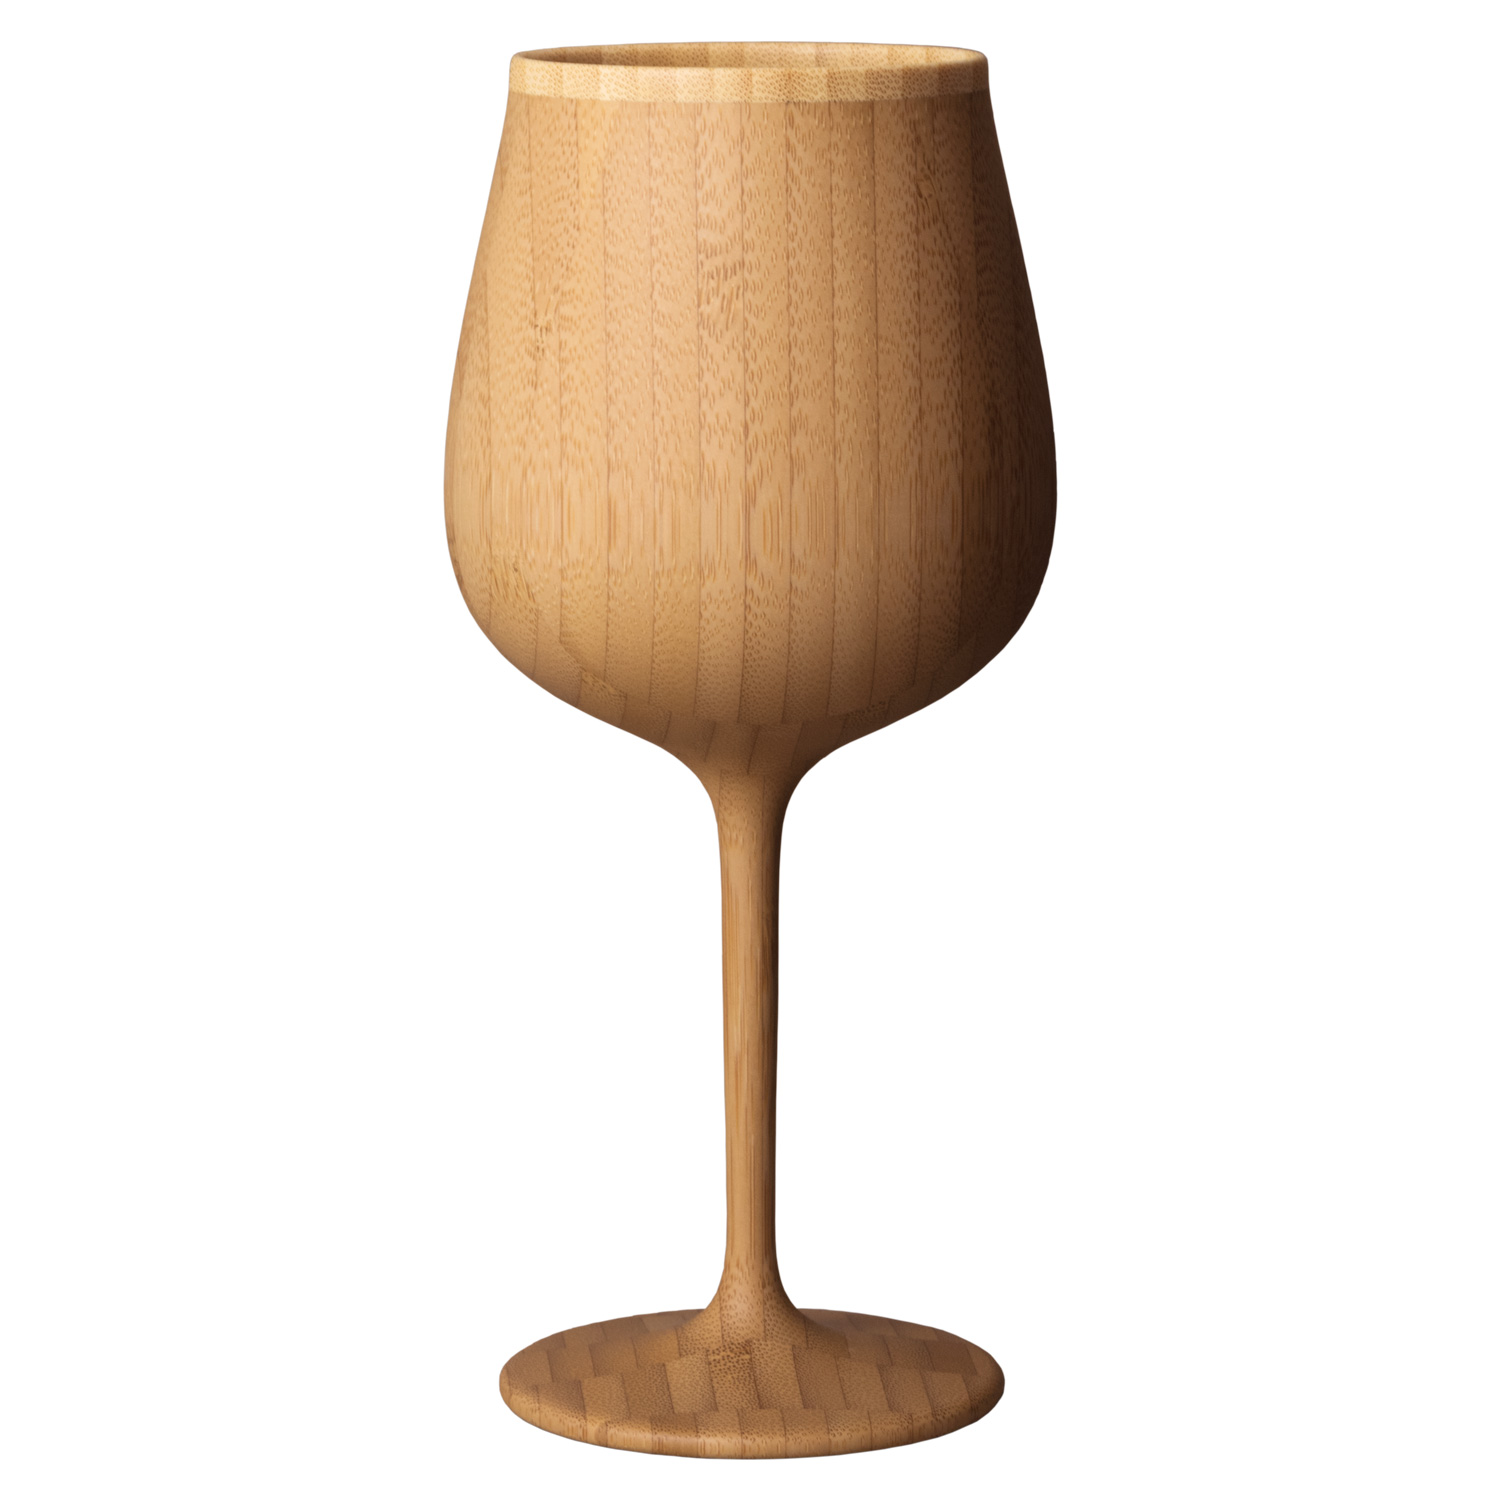 リヴェレット RIVERET グラス ワイングラス ブルゴーニュ 約320ml 割れない 竹製 軽量...